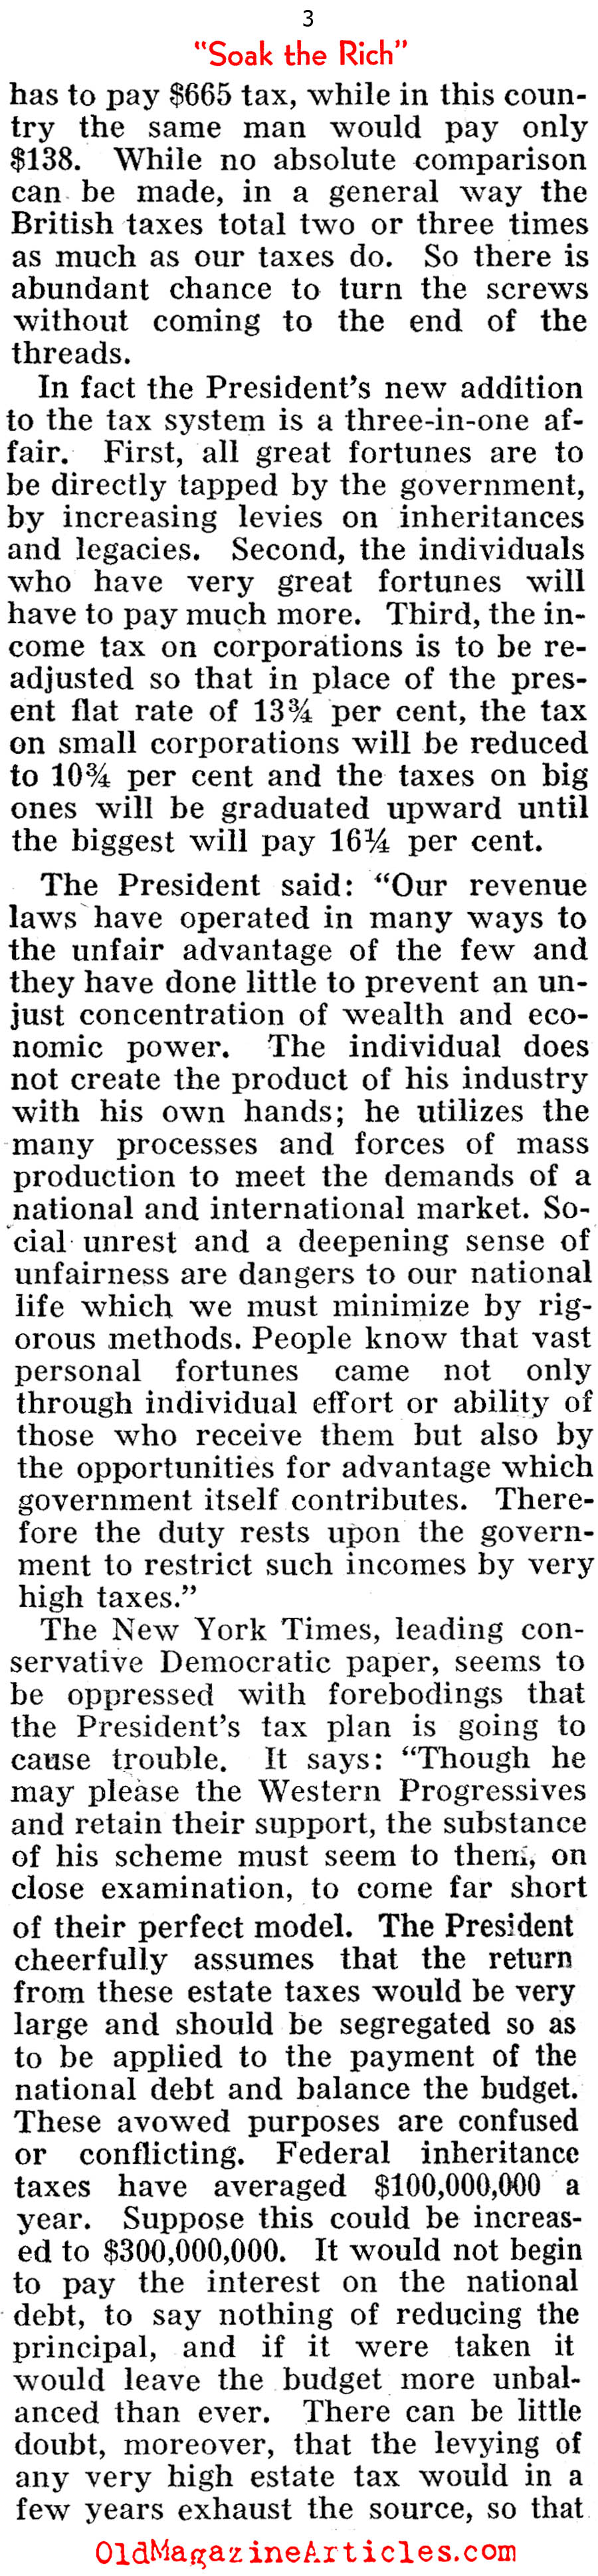 ''Soak the Rich'' (Pathfinder Magazine, 1935)